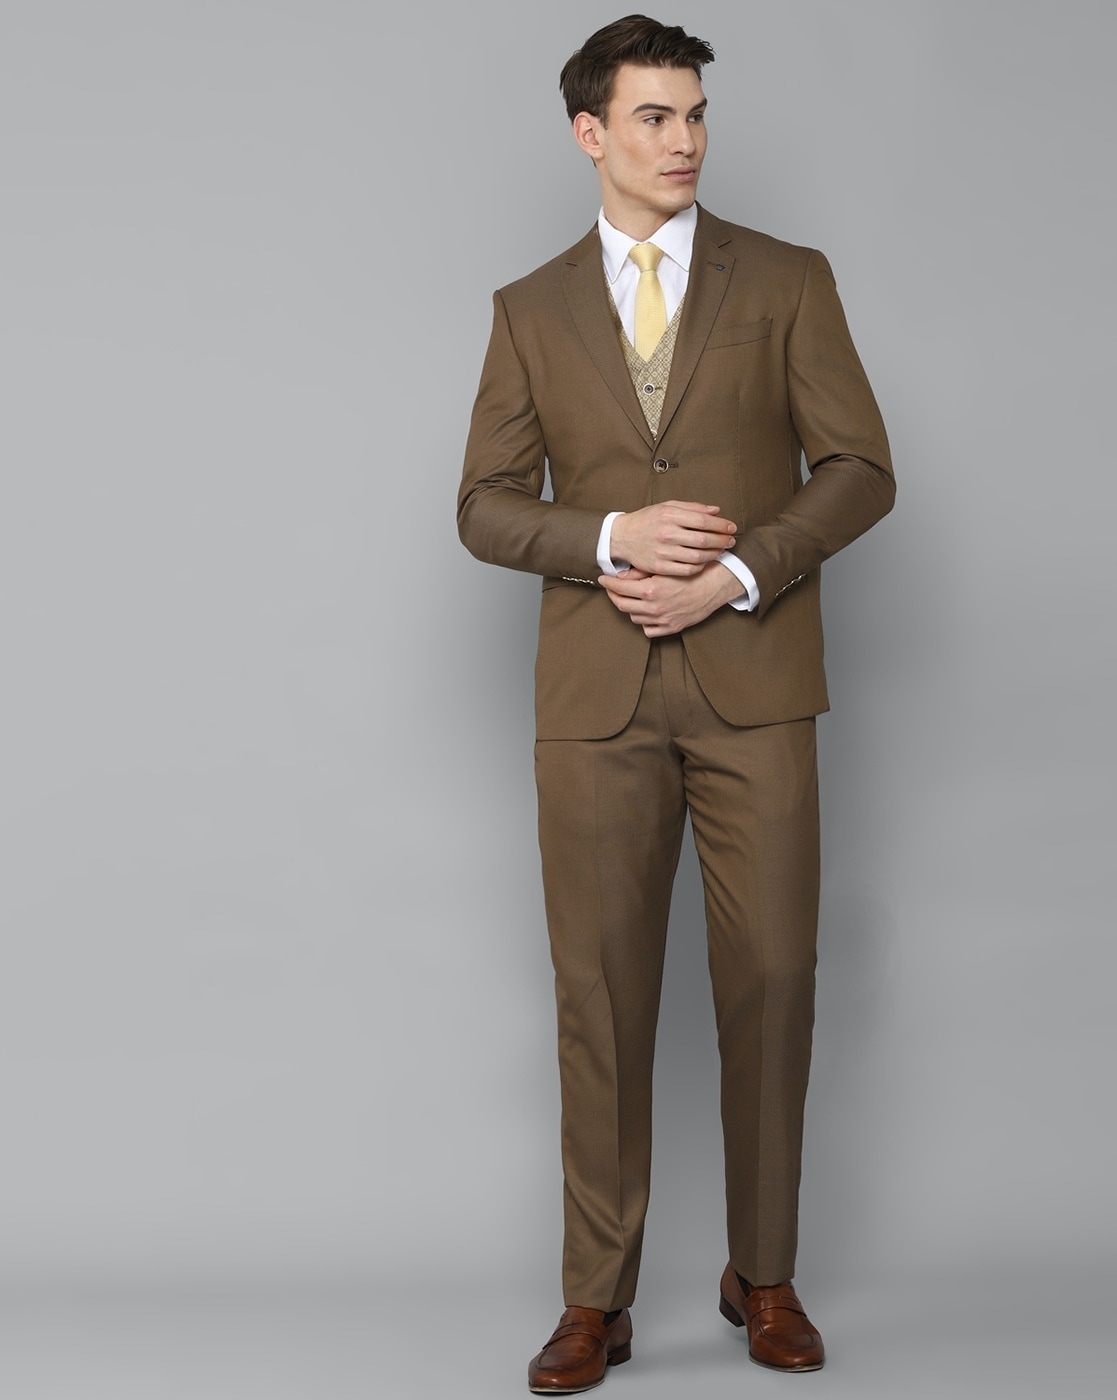 Buy Men Brown Slim Fit Solid Formal Two Piece Suit Online  642157  Allen  Solly